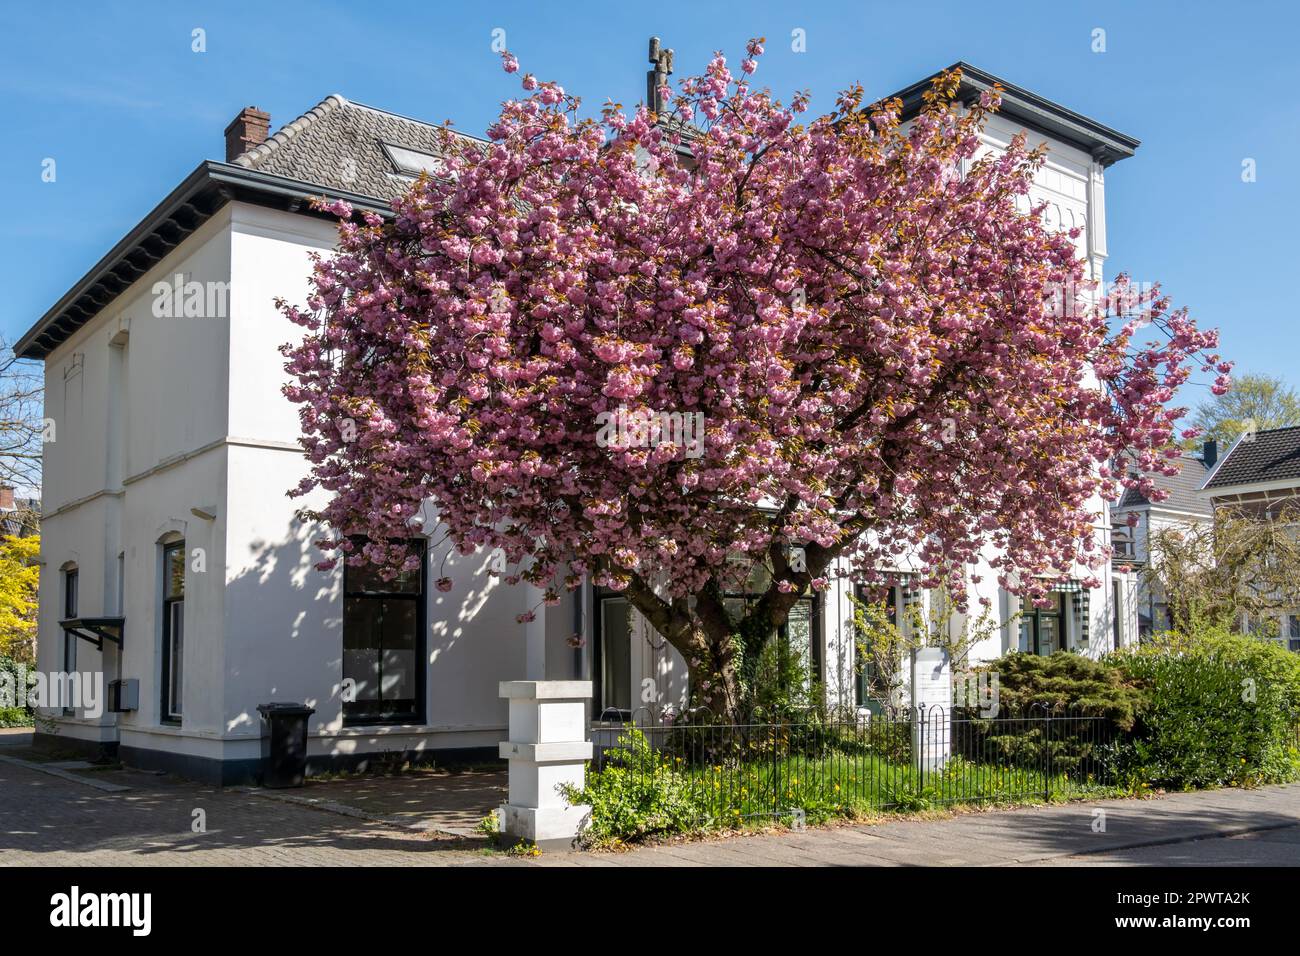 Japanese cherry tree, Prunus serrulata 'Kanzan', in bloom with pink flowers in front garden of detached villa, Hilversum, Netherlands Stock Photo